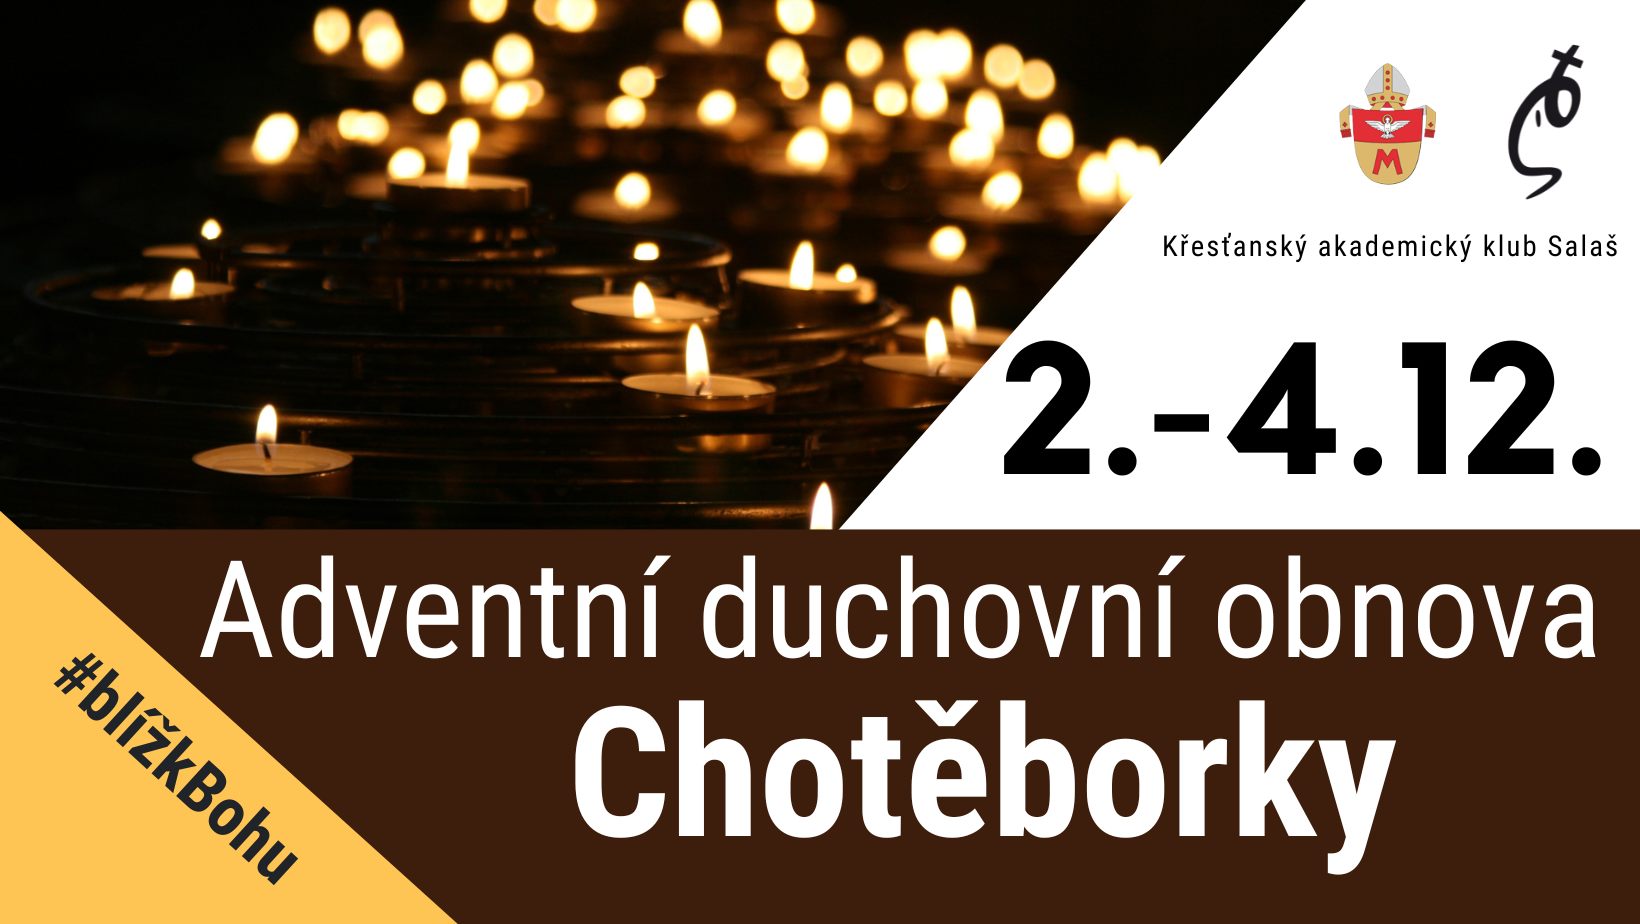 Adventní duchovní obnova v Chotěborkách